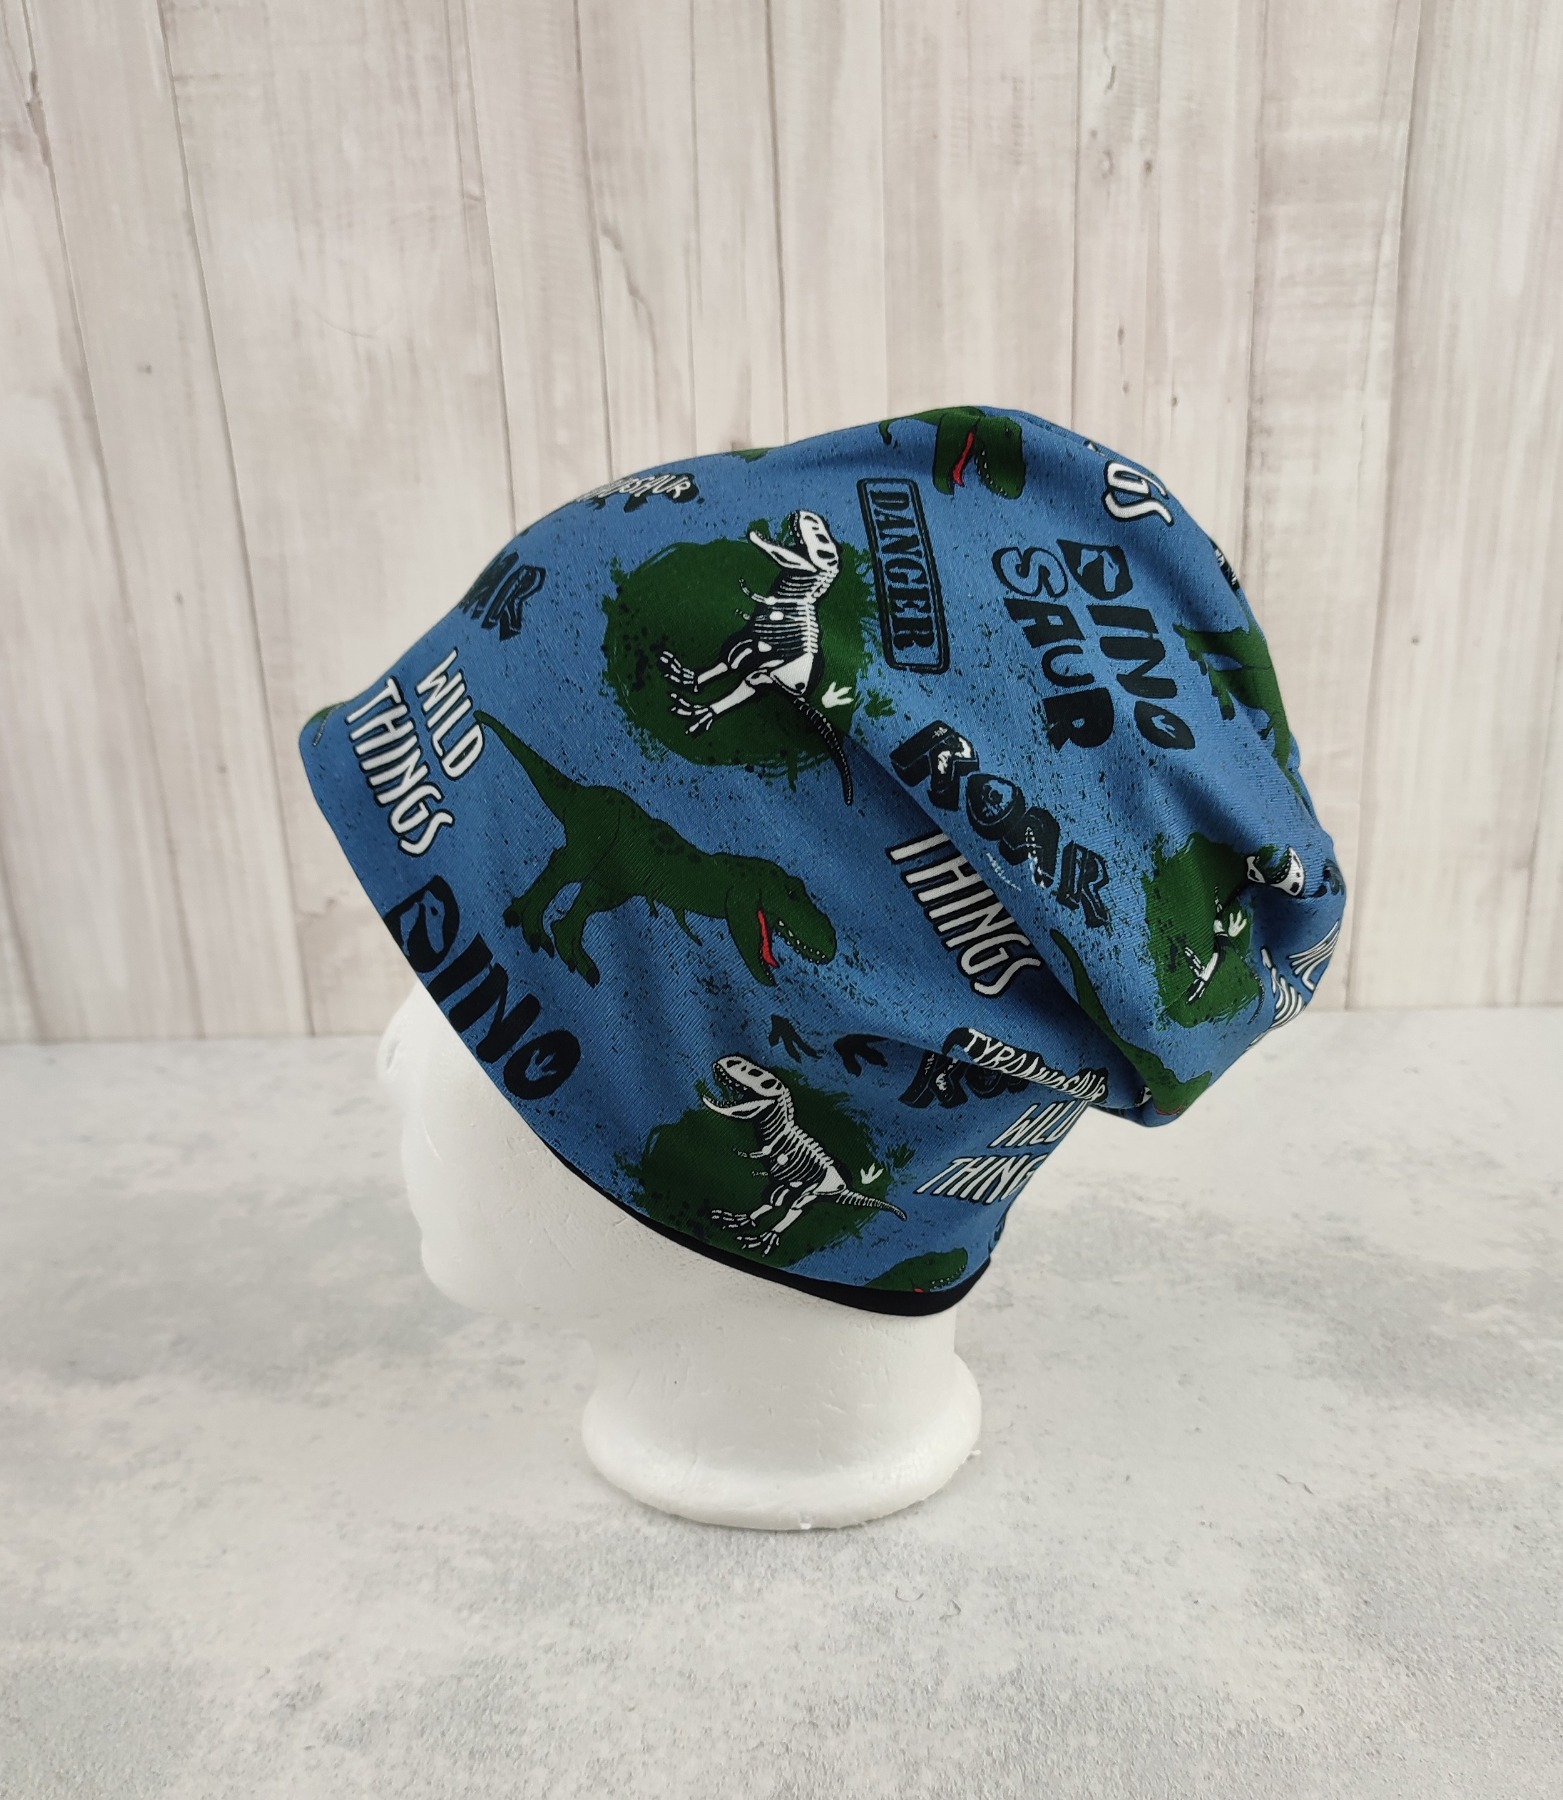 Beanie Dinosaurier - coole Mütze für Kinder mit Dinos auf Jersey in jeansblau Größe ca 48 - 54 cm Kopfumfang 4